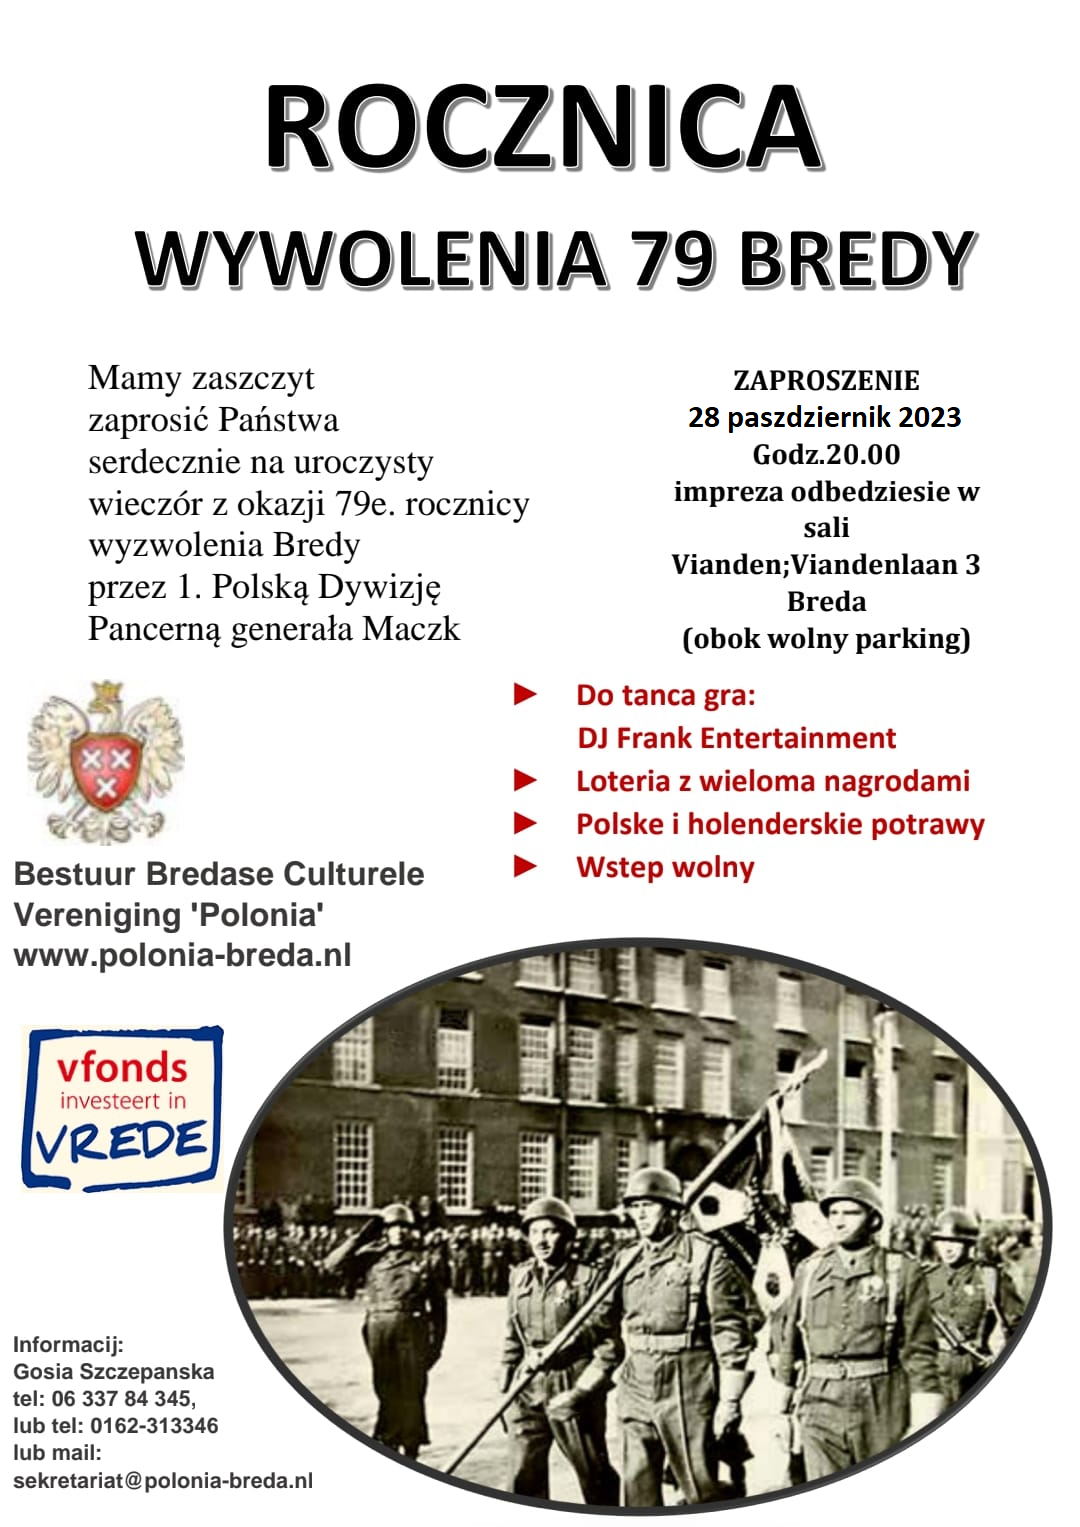 Wij nodigen u van harte uit voor de Bevrijdingsfeestavond ter gelegenheid van de 79e herdenking bevrijd van Breda door de 1e Poolse Patserdivisie o.l.v. generaal Maczek.
Wanneer: 28 oktober 2023 om 20.00 uur
Waar: Zaal Vianden, Viandenlaan 3, Breda.